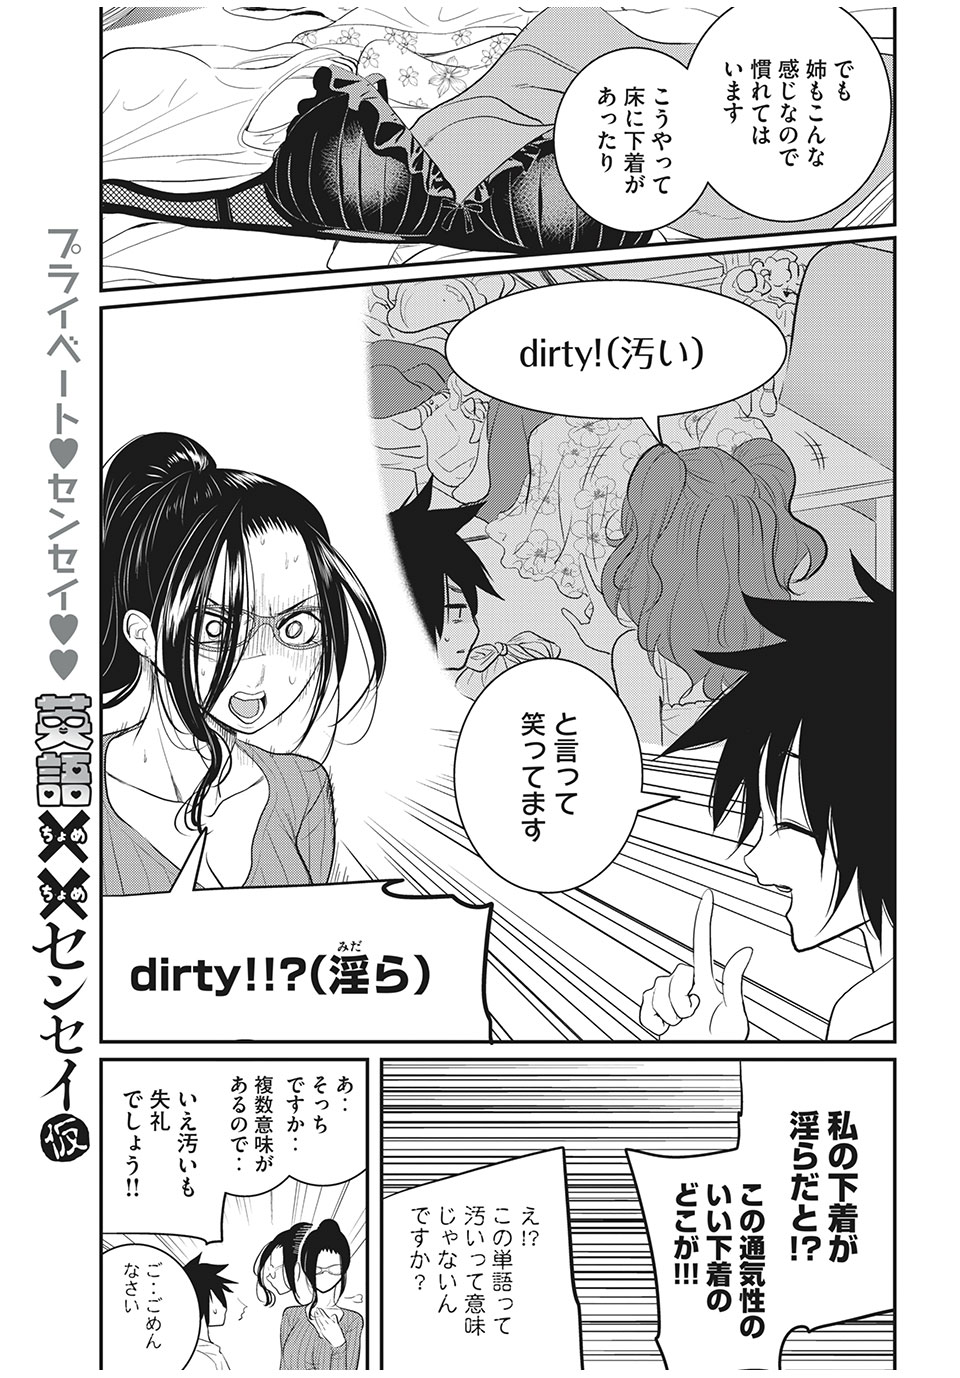 Eigo ×× Sensei - Chapter 9 - Page 5